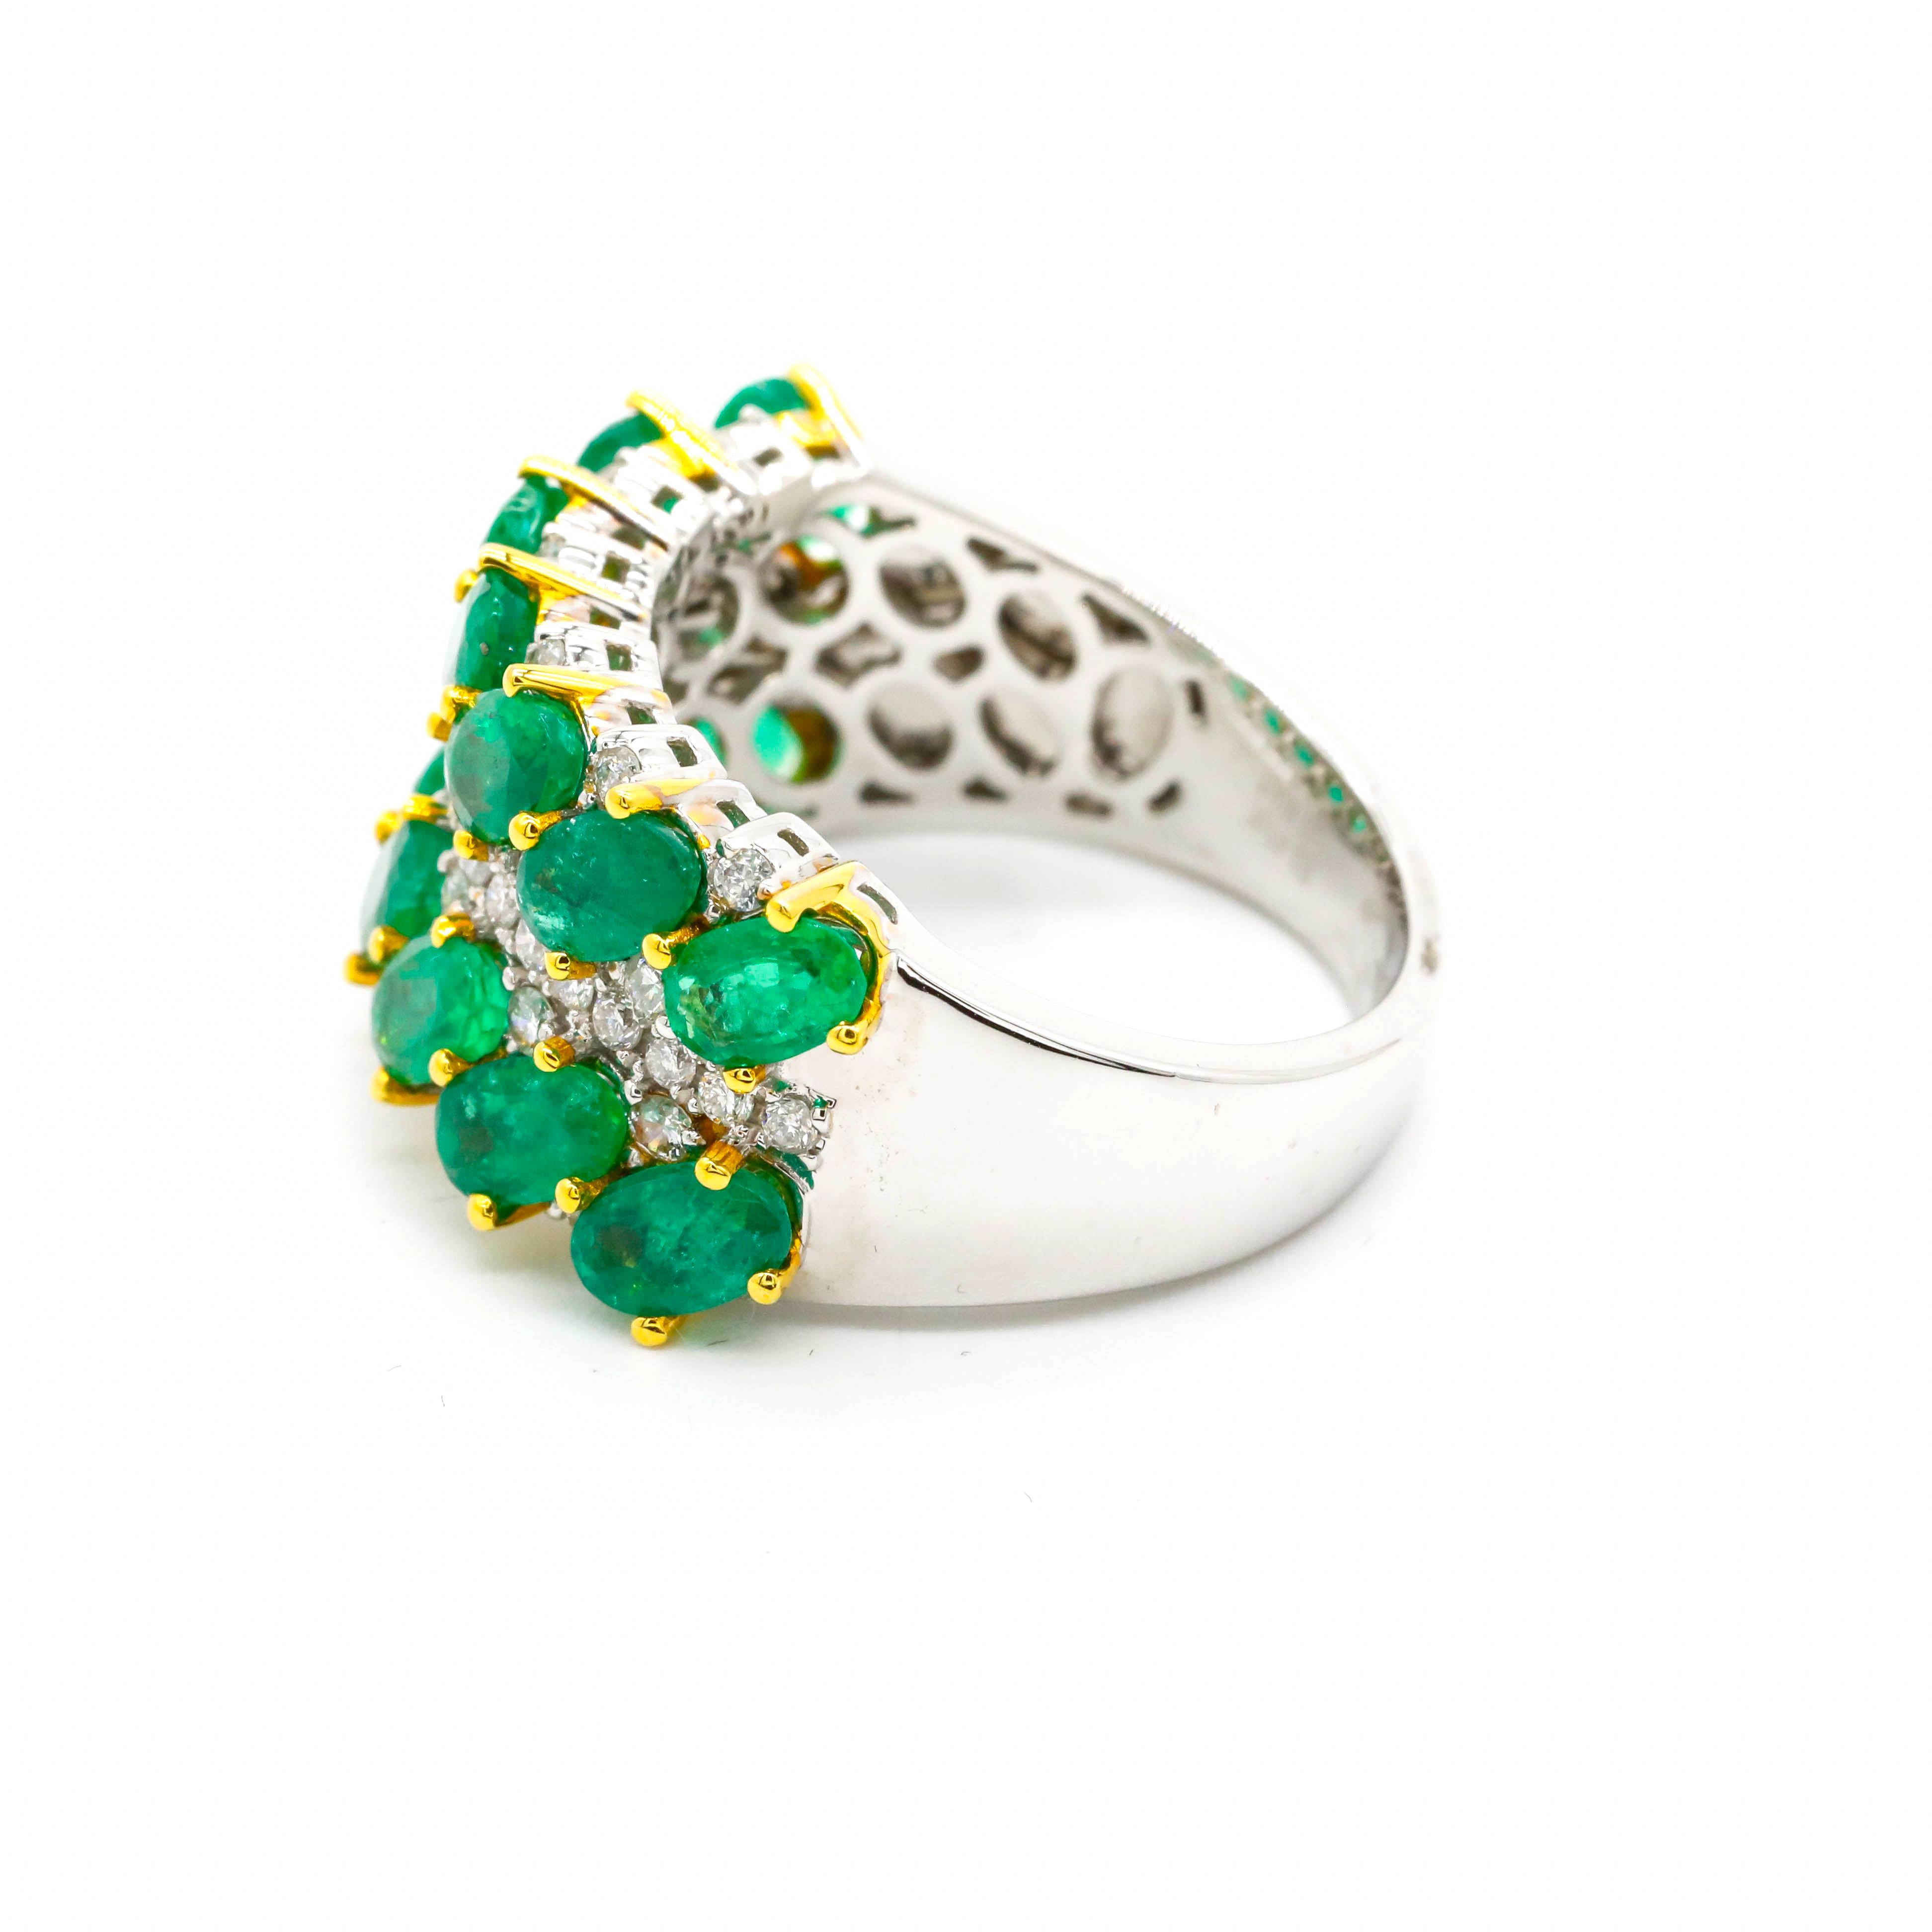 3,20 Karat Oval Cut Smaragd und runde Diamanten Band Ring in 18k zweifarbig Gold

Glamouröser Look. Die ovalen Smaragde sind in drei horizontalen Reihen in einer Zackenfassung gefasst. Um die Smaragde herum sind Diamanten geschichtet, die ein